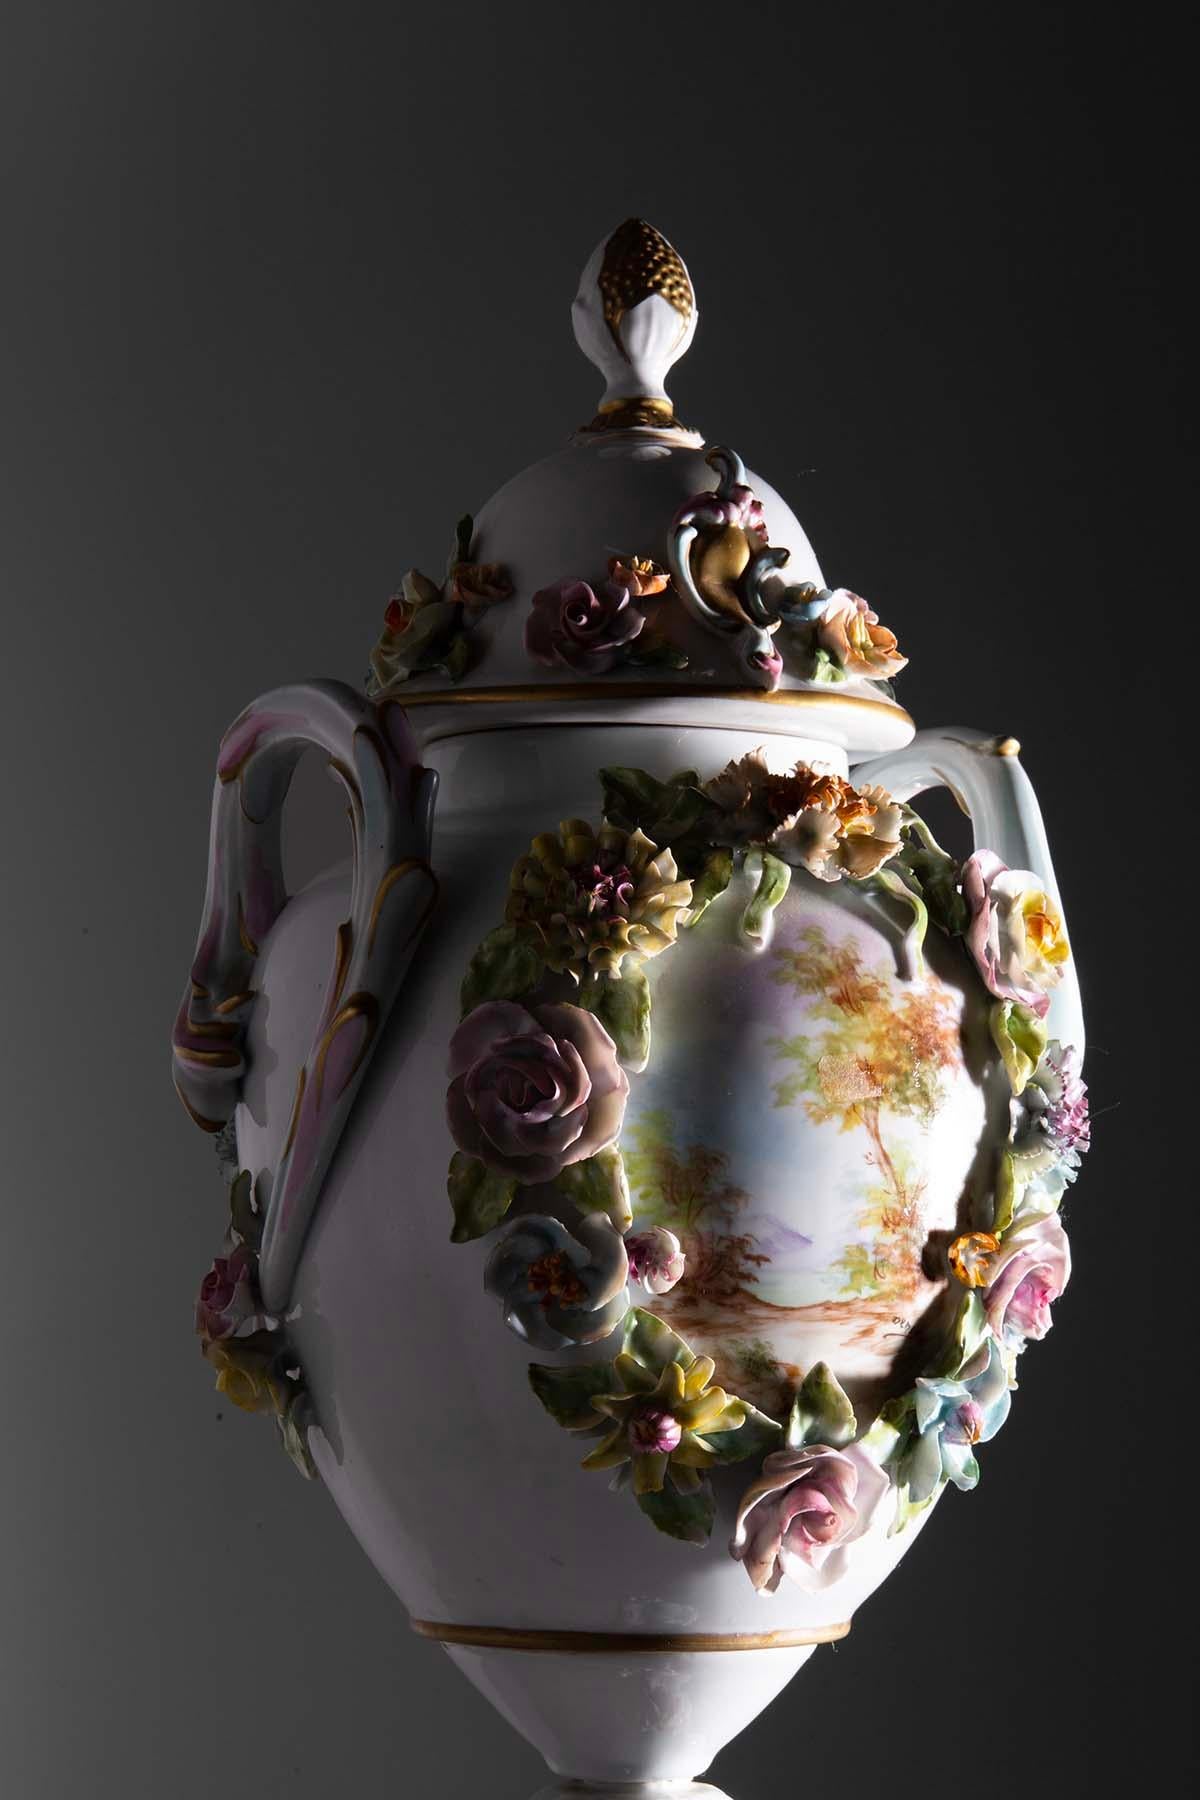 Explorez le monde magnifique de l'art et de l'élégance italiens avec cet extraordinaire vase décoratif de Capodimonte datant du XXe siècle. La porcelaine de Capodimonte, réputée pour sa beauté et sa qualité extraordinaires, trouve une expression